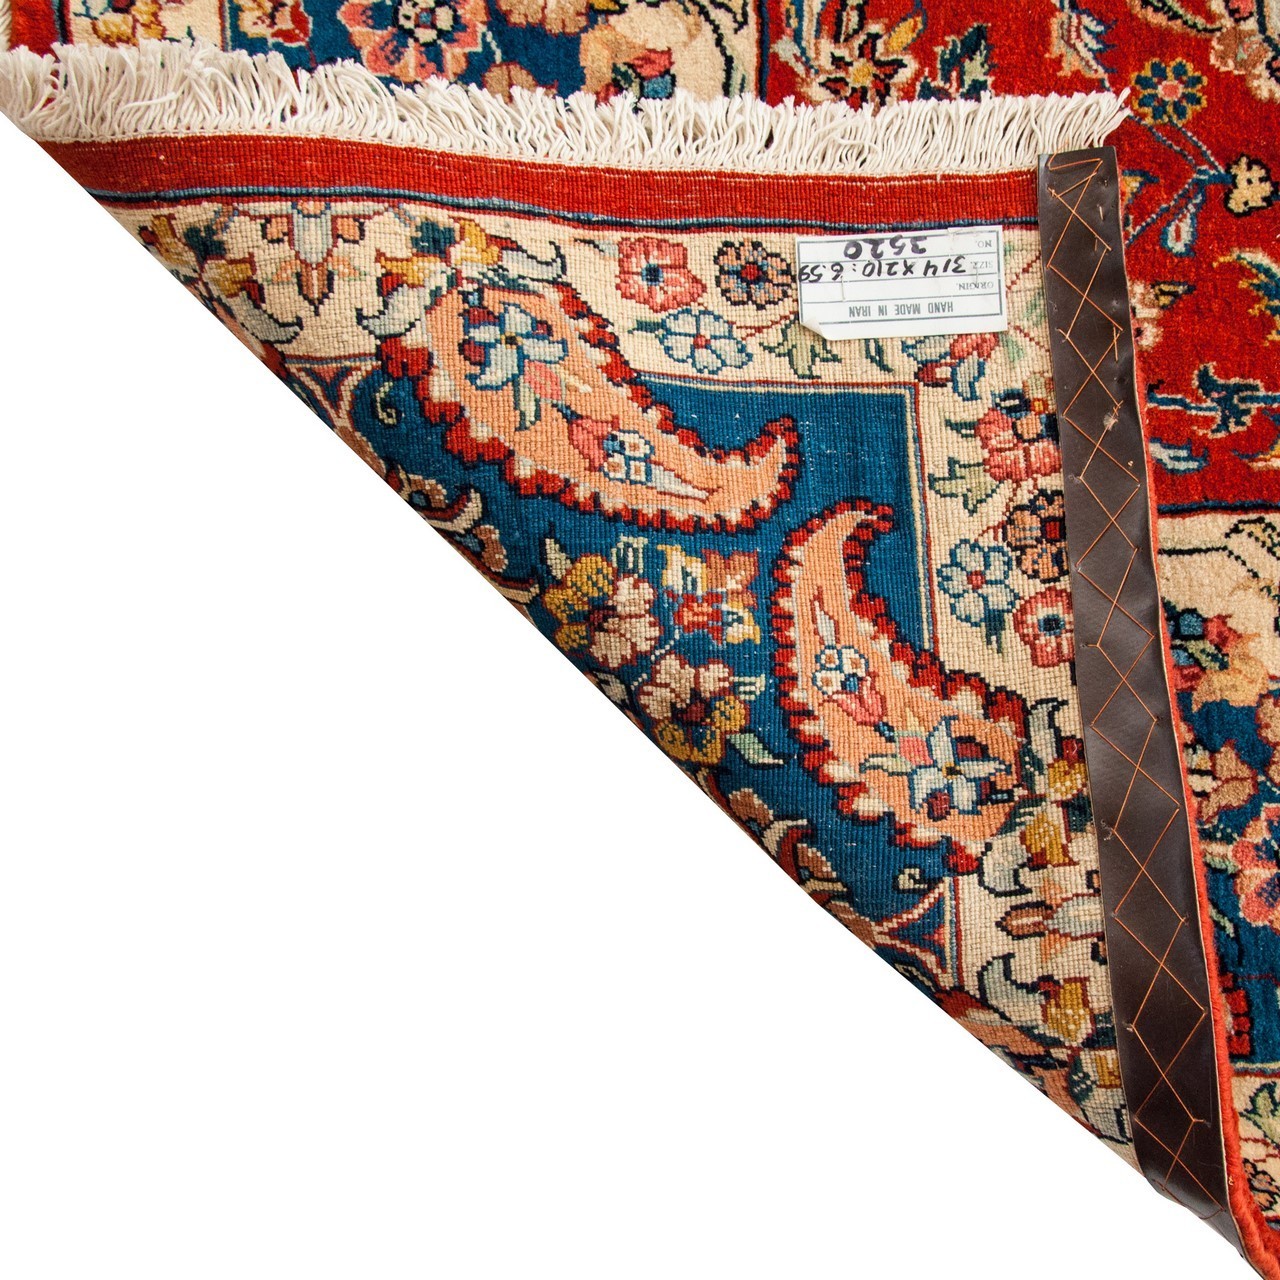 Ferahan Carpet Ref 101965